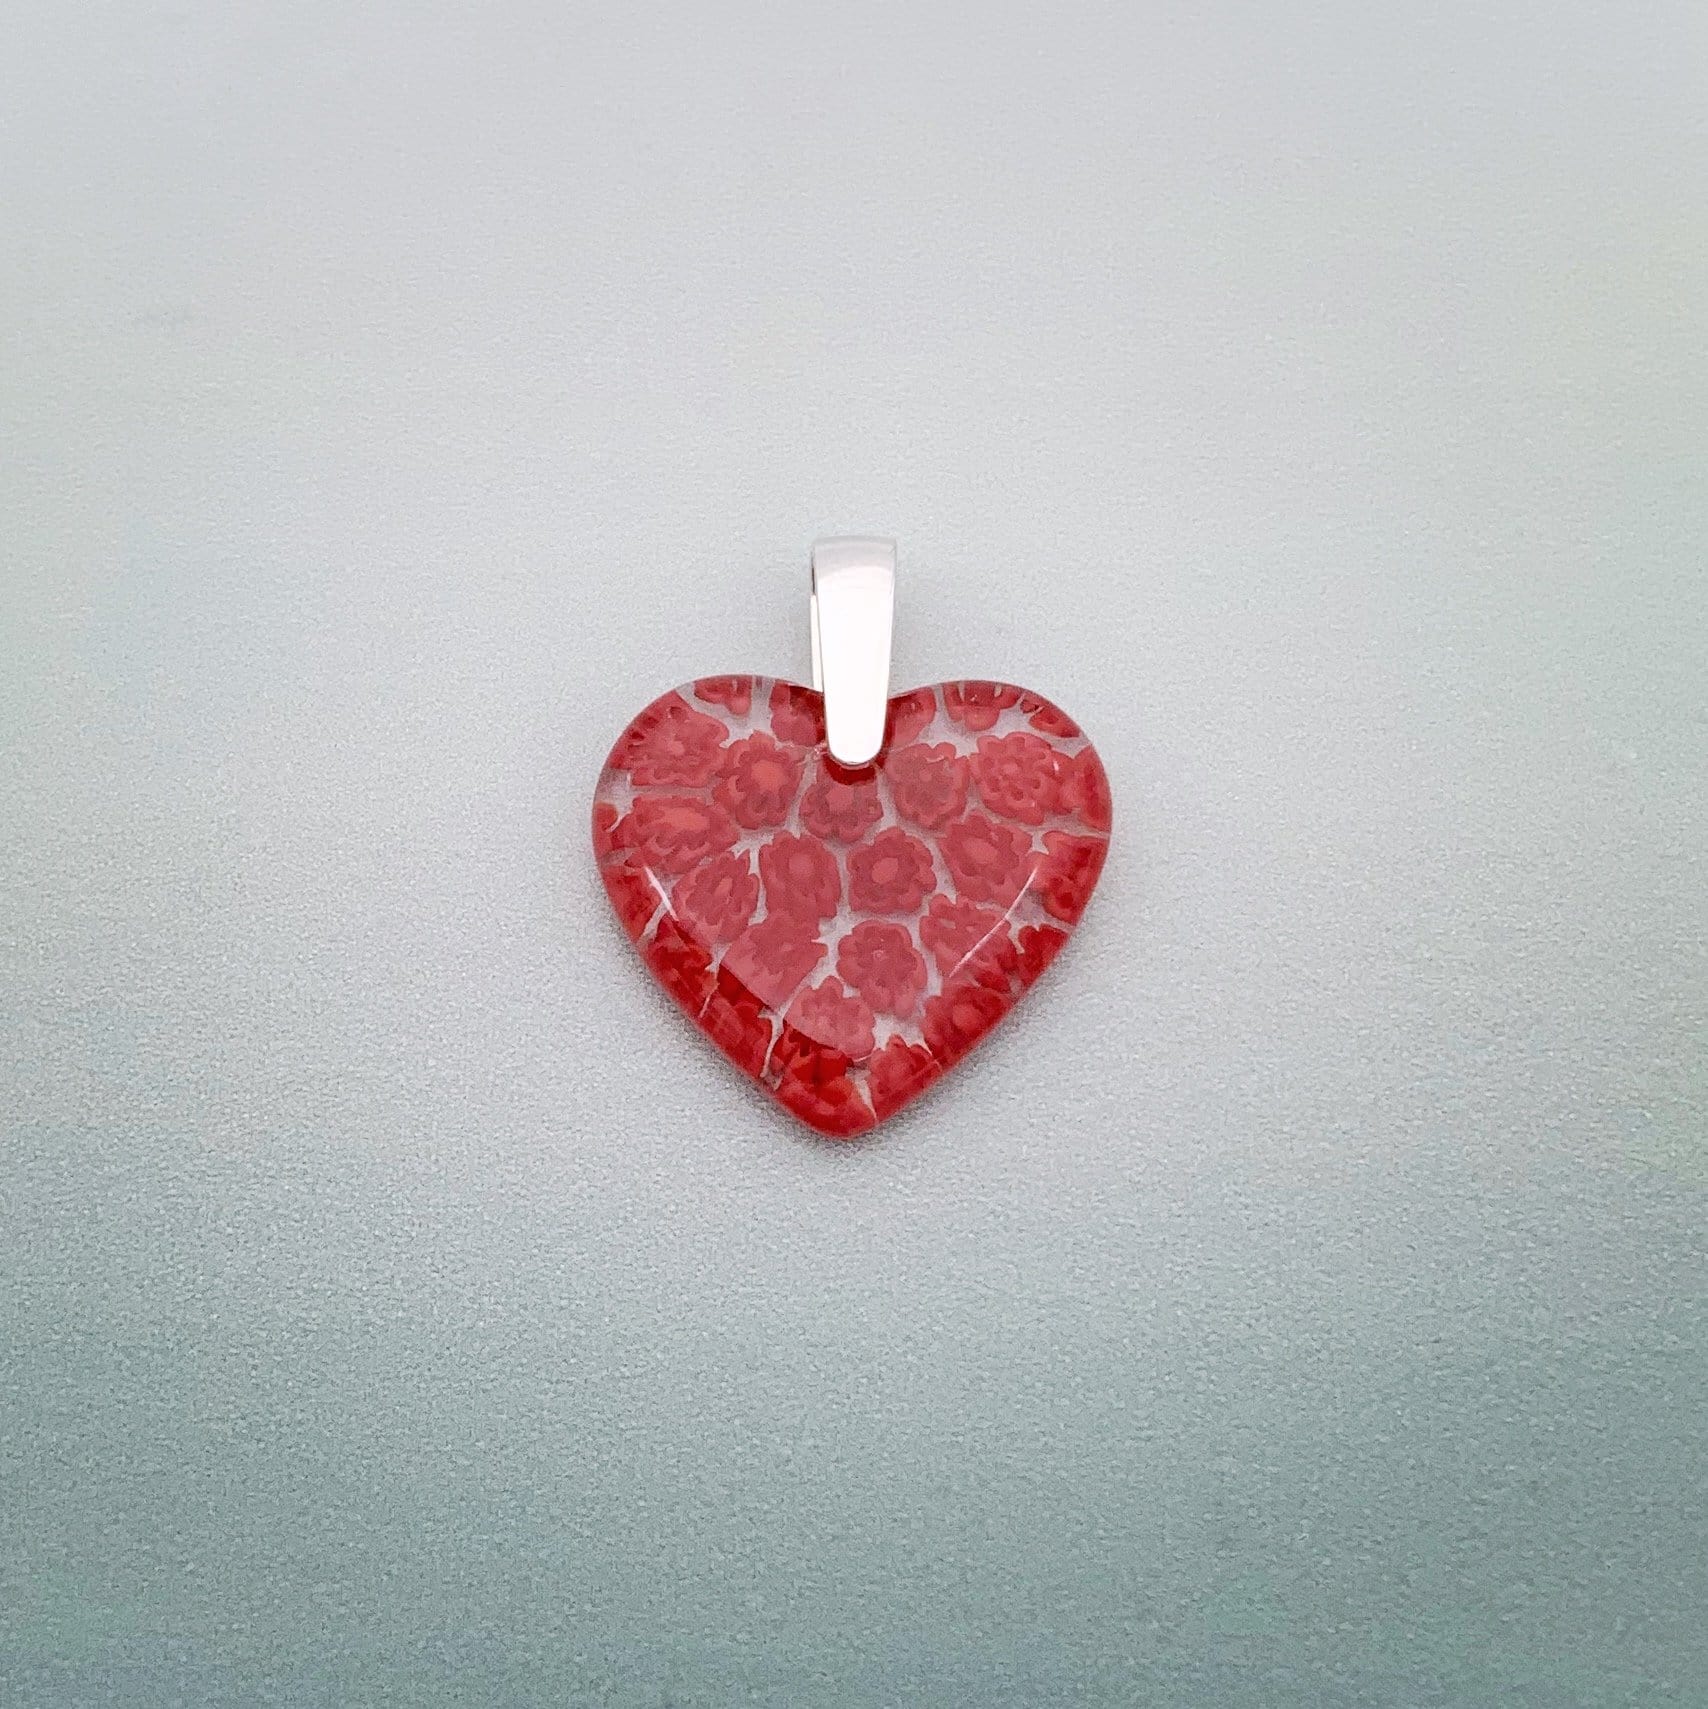 Fused millefiori small glass heart pendant in red fleurette